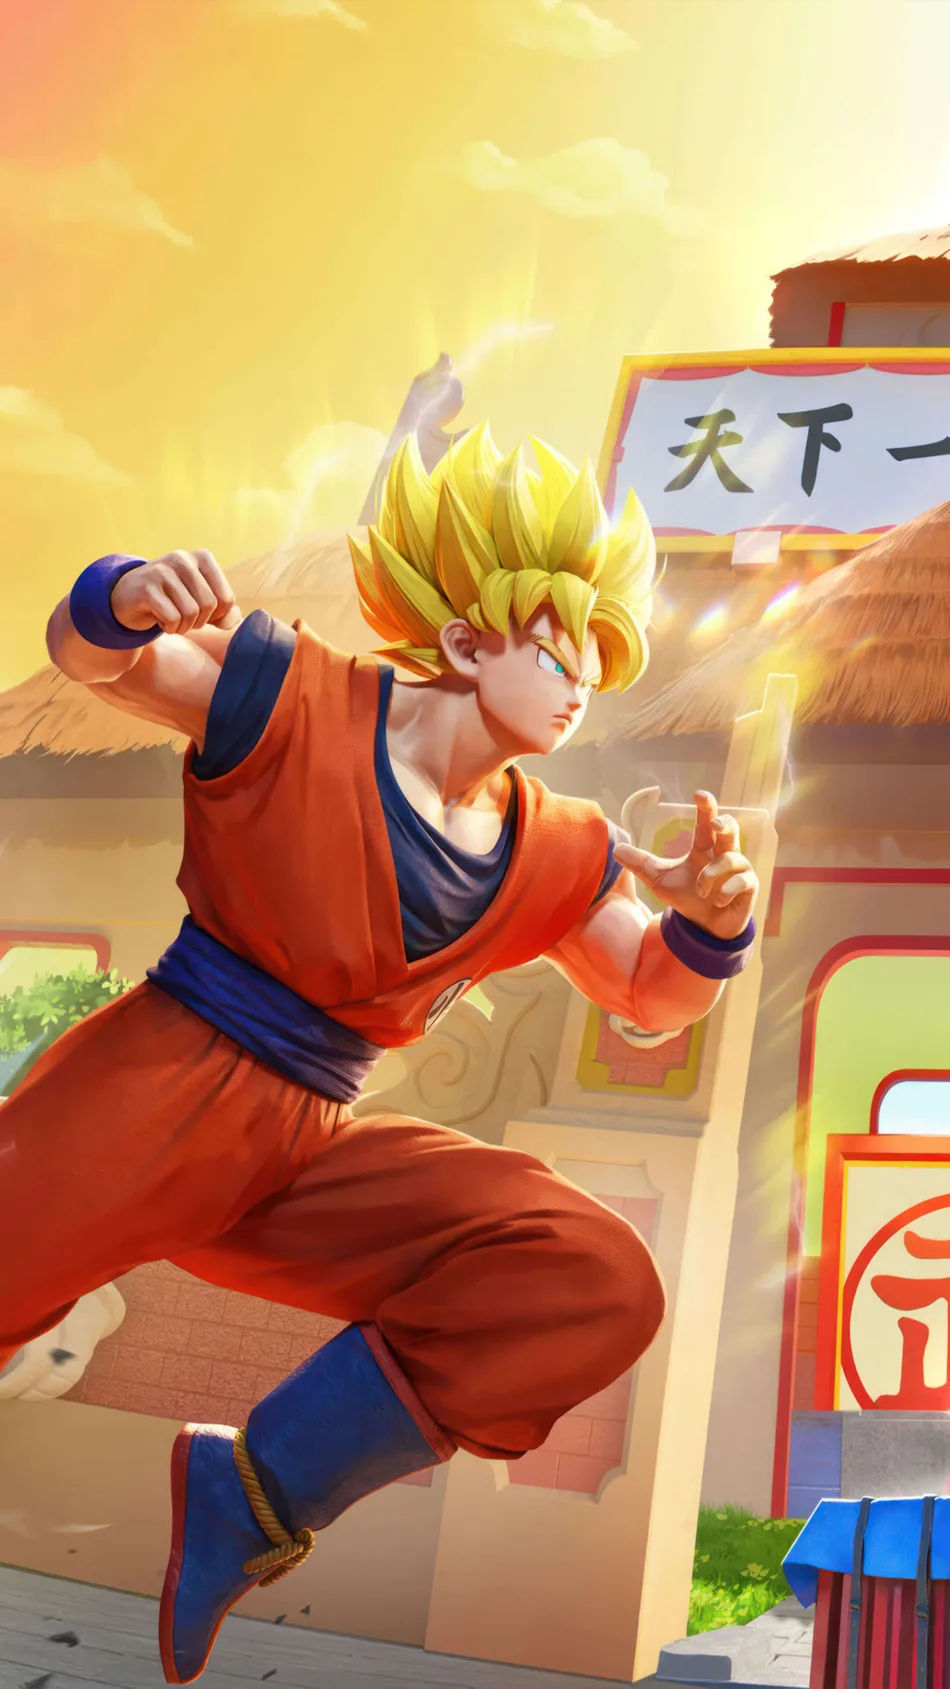 Goku In Action PUBG Mobile Dragon Ball Super Season